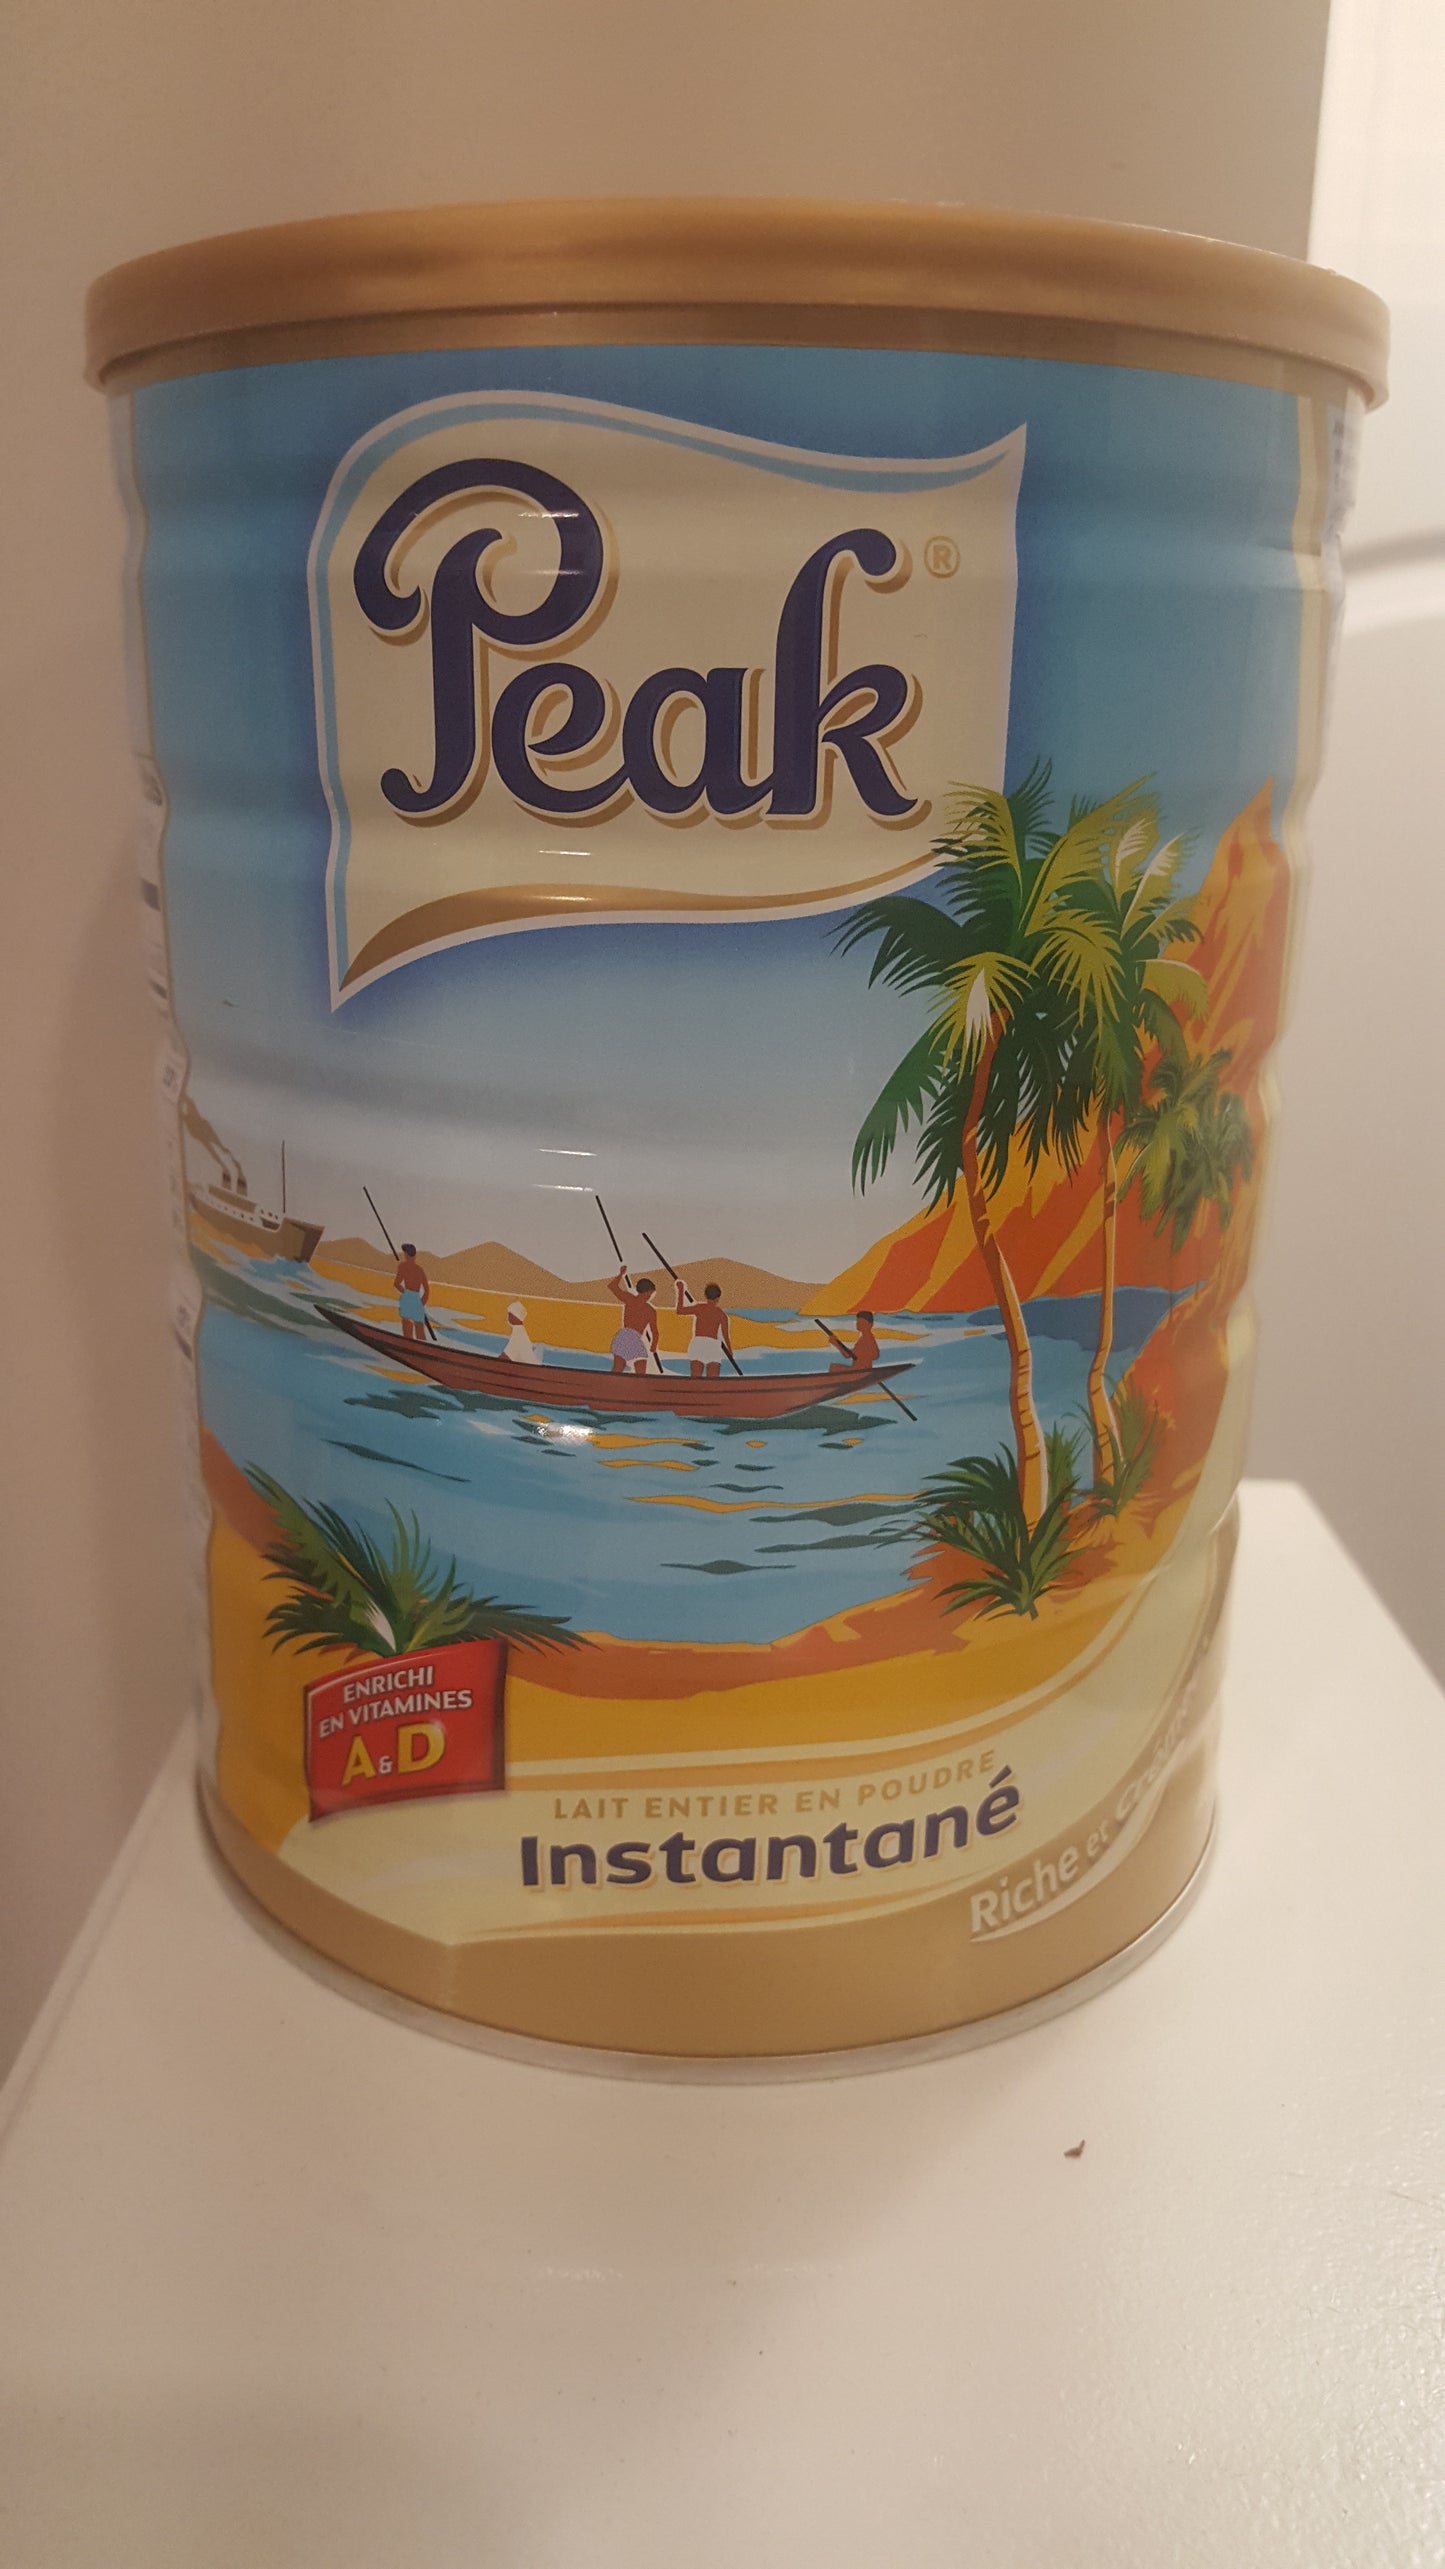 Peak milk 900g